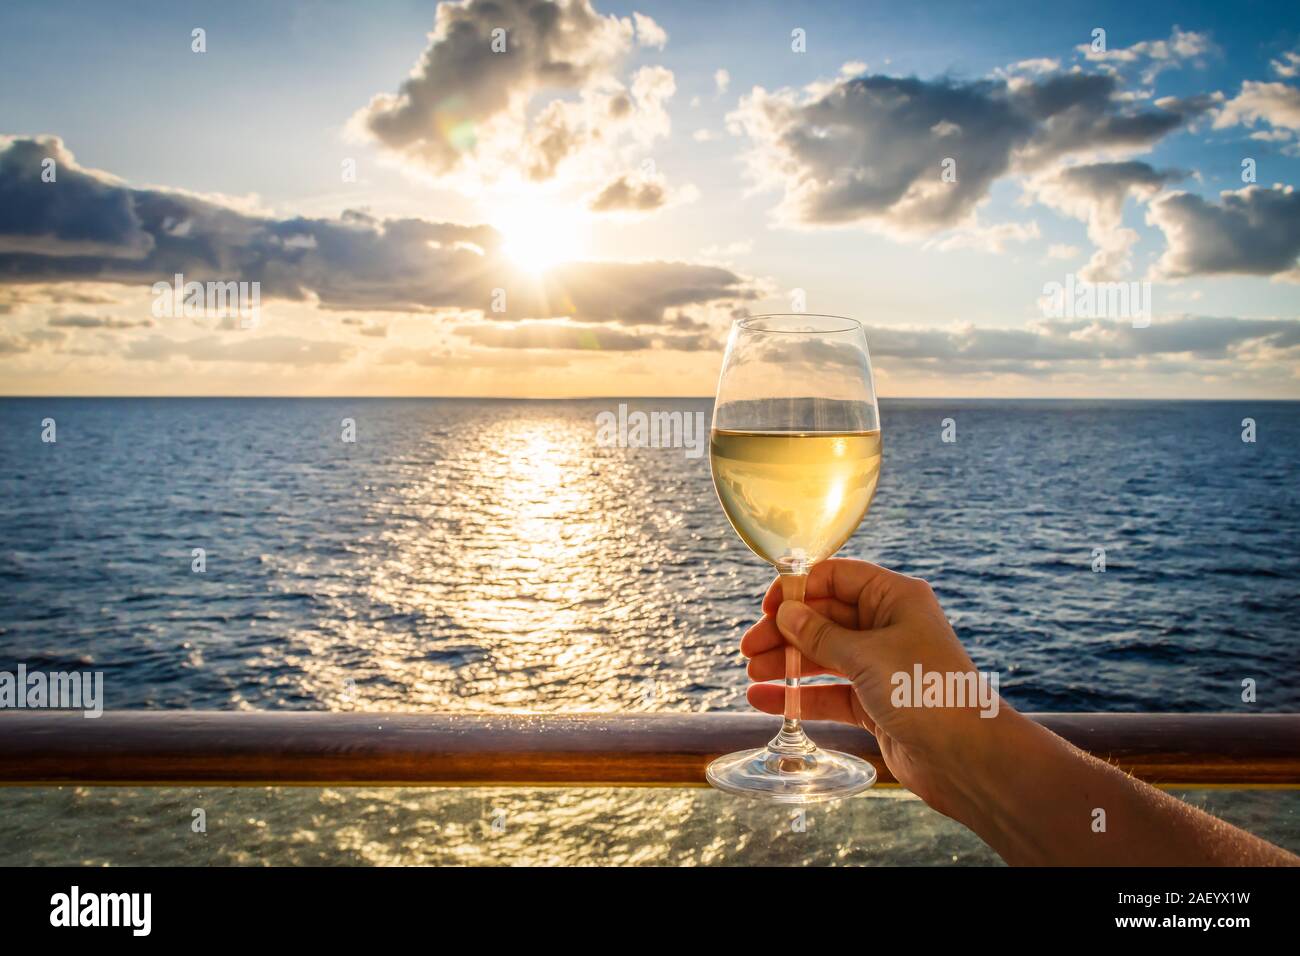 Bei Sonnenuntergang eine weibliche Hand Toast das Neue Jahr mit einem Glas Weisswein. Foto auf einem Balkon eines Kreuzfahrtschiffes mit Meerblick genommen. Stockfoto